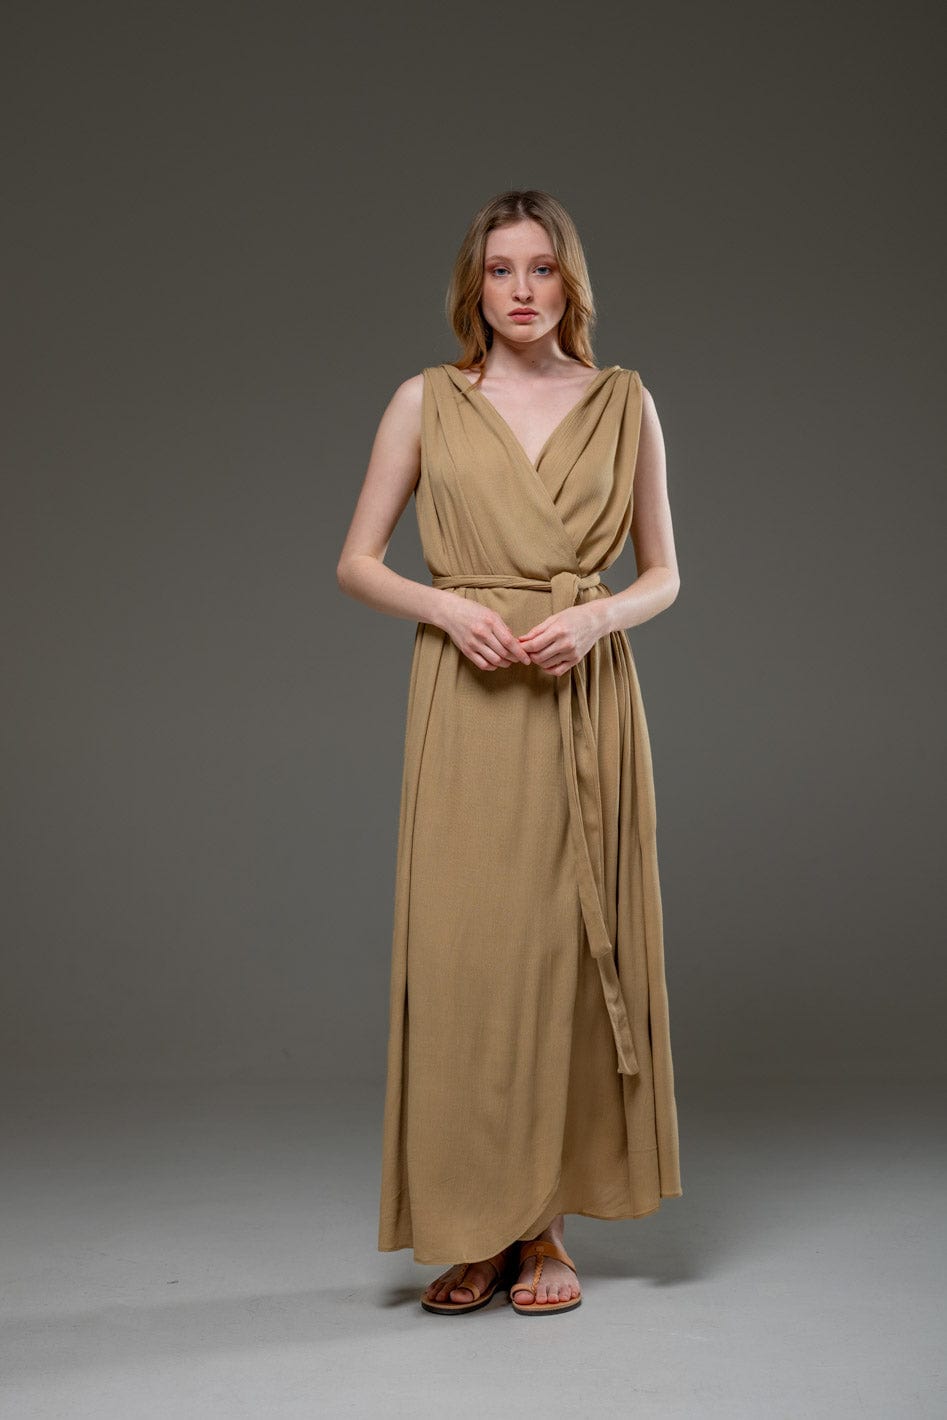 Golden Sand Color Rayon Crepe Elegant Chic adjustable short sleeves self tie belt wrap Long Dress 